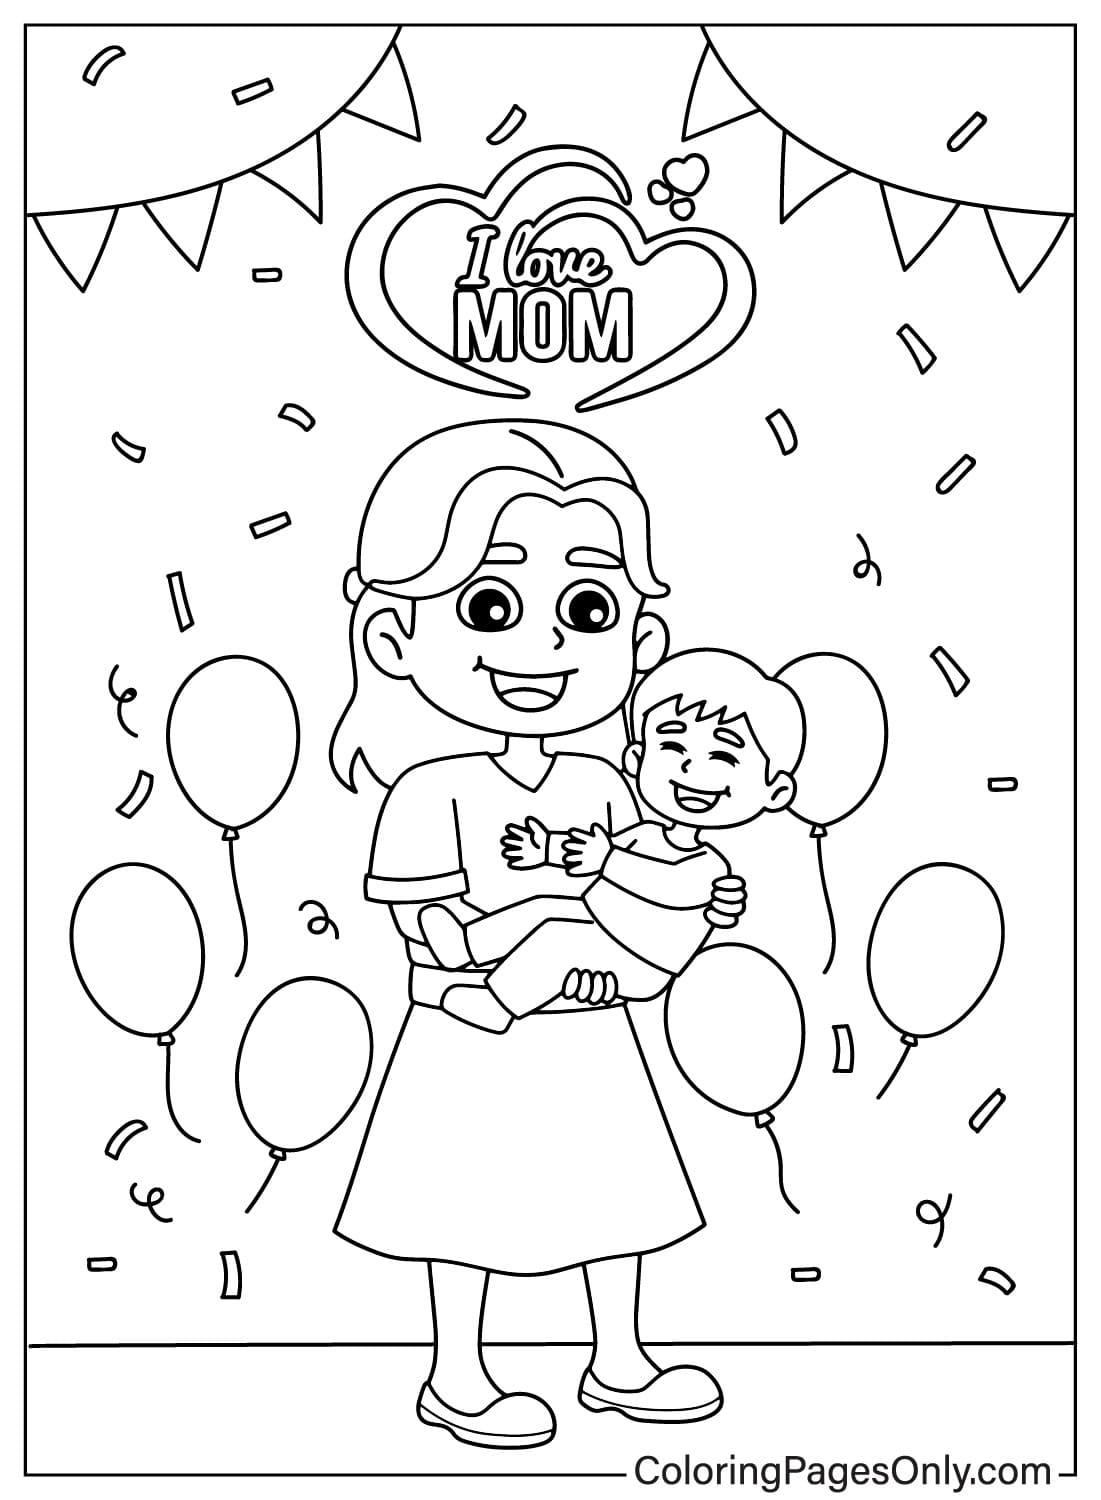 Página para colorir de I Love Mom para imprimir de I Love Mom